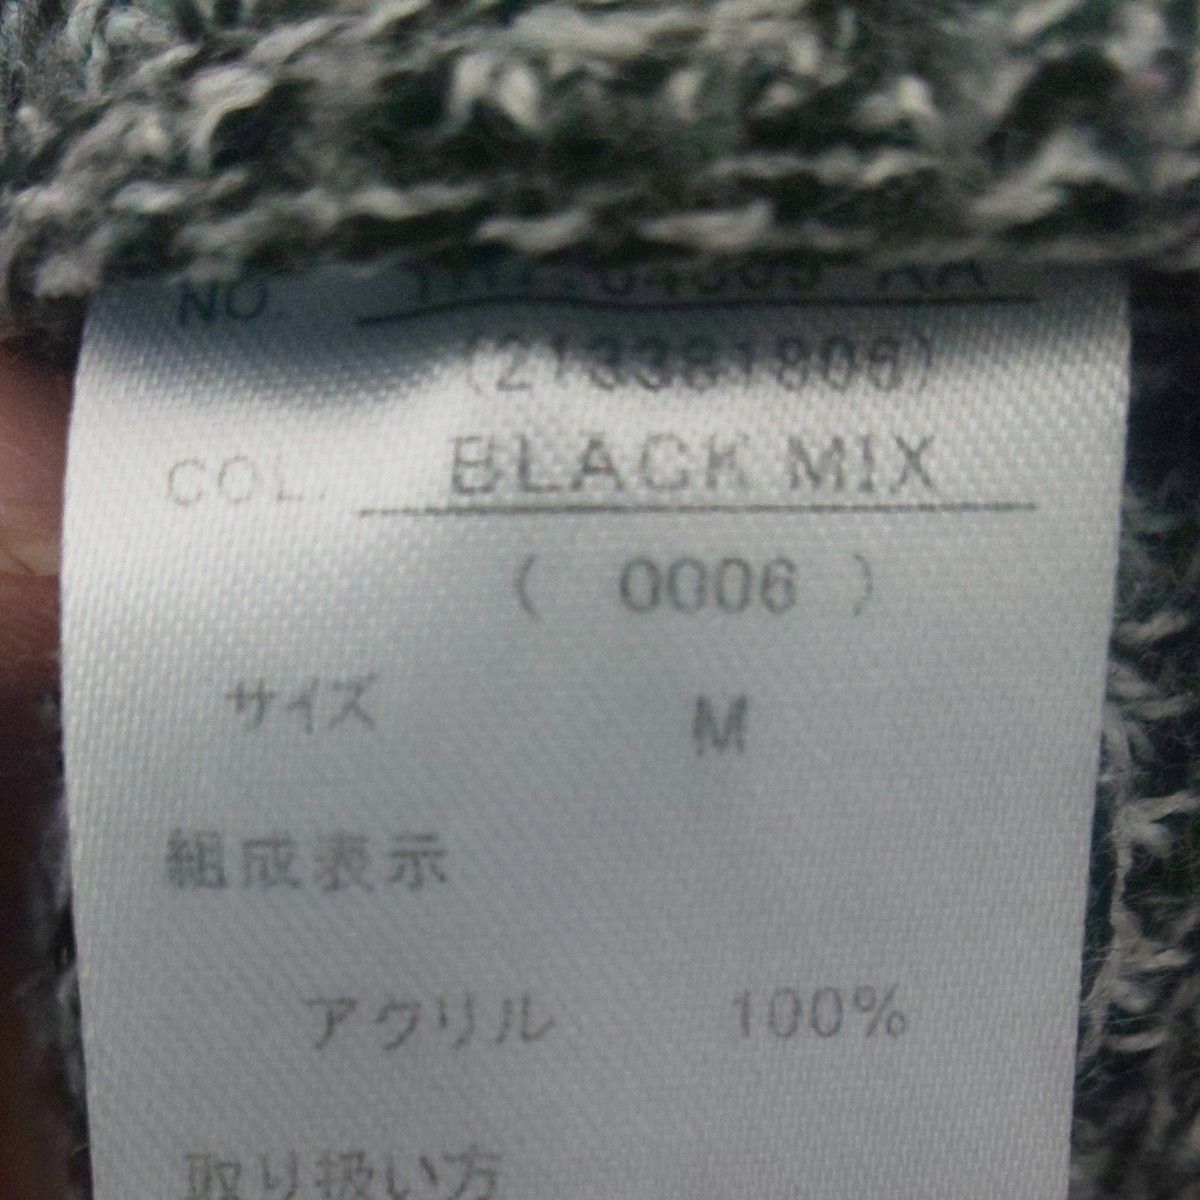 ブラック×ホワイト ミックス柄ニット   HEARTMARKET  ハートマーケット